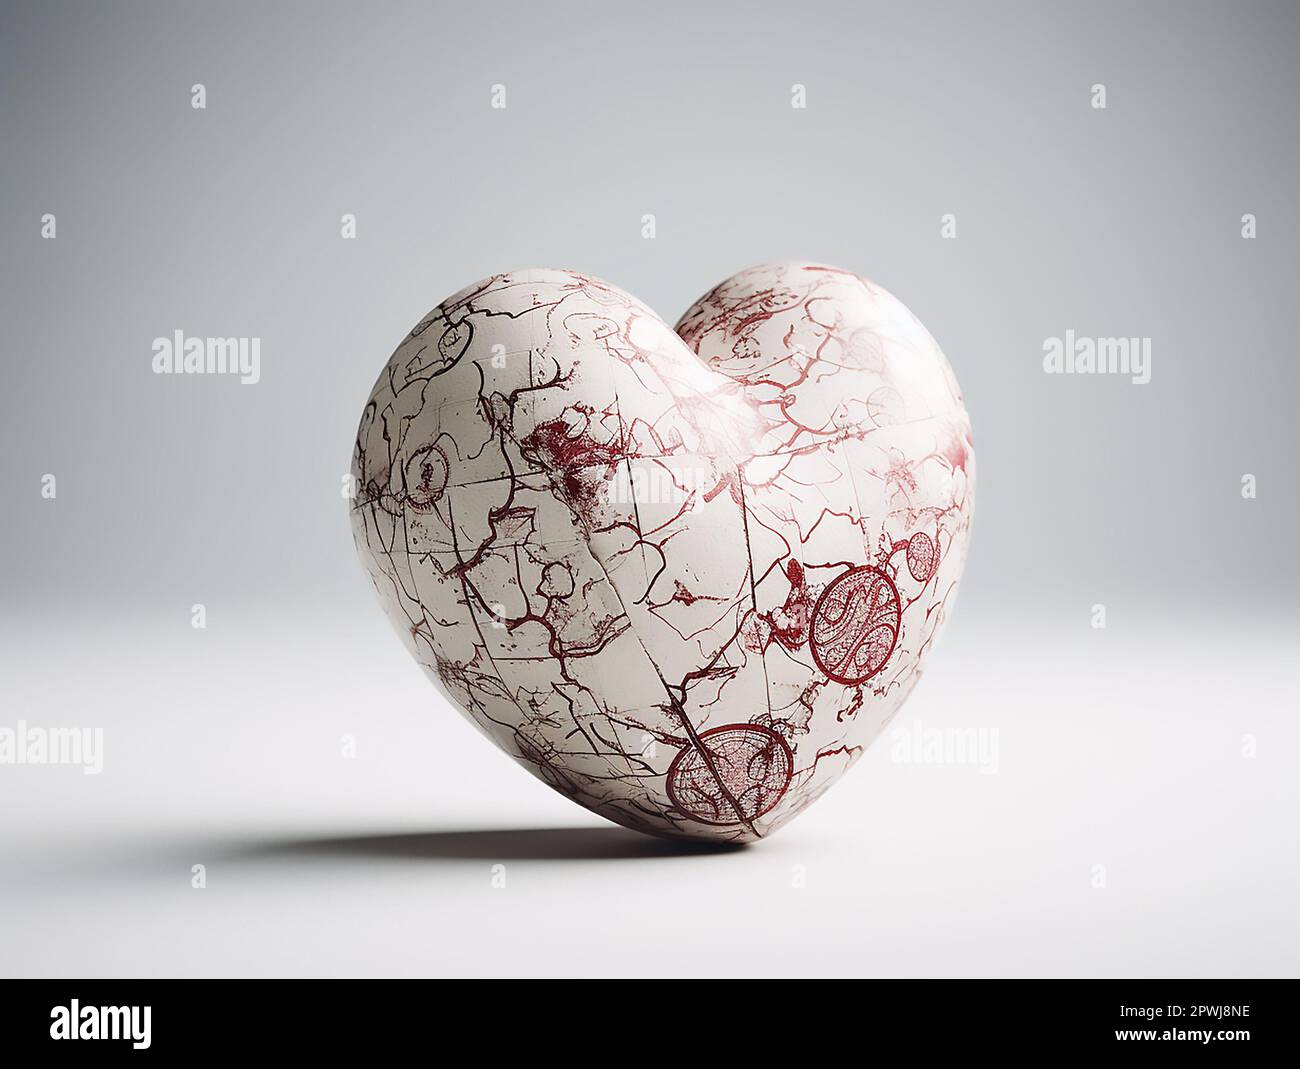 Halten Sie Ihr Herz kräftig: Feiern Sie den Weltherztag und fördern Sie die Herz-Kreislauf-Gesundheit Stockfoto